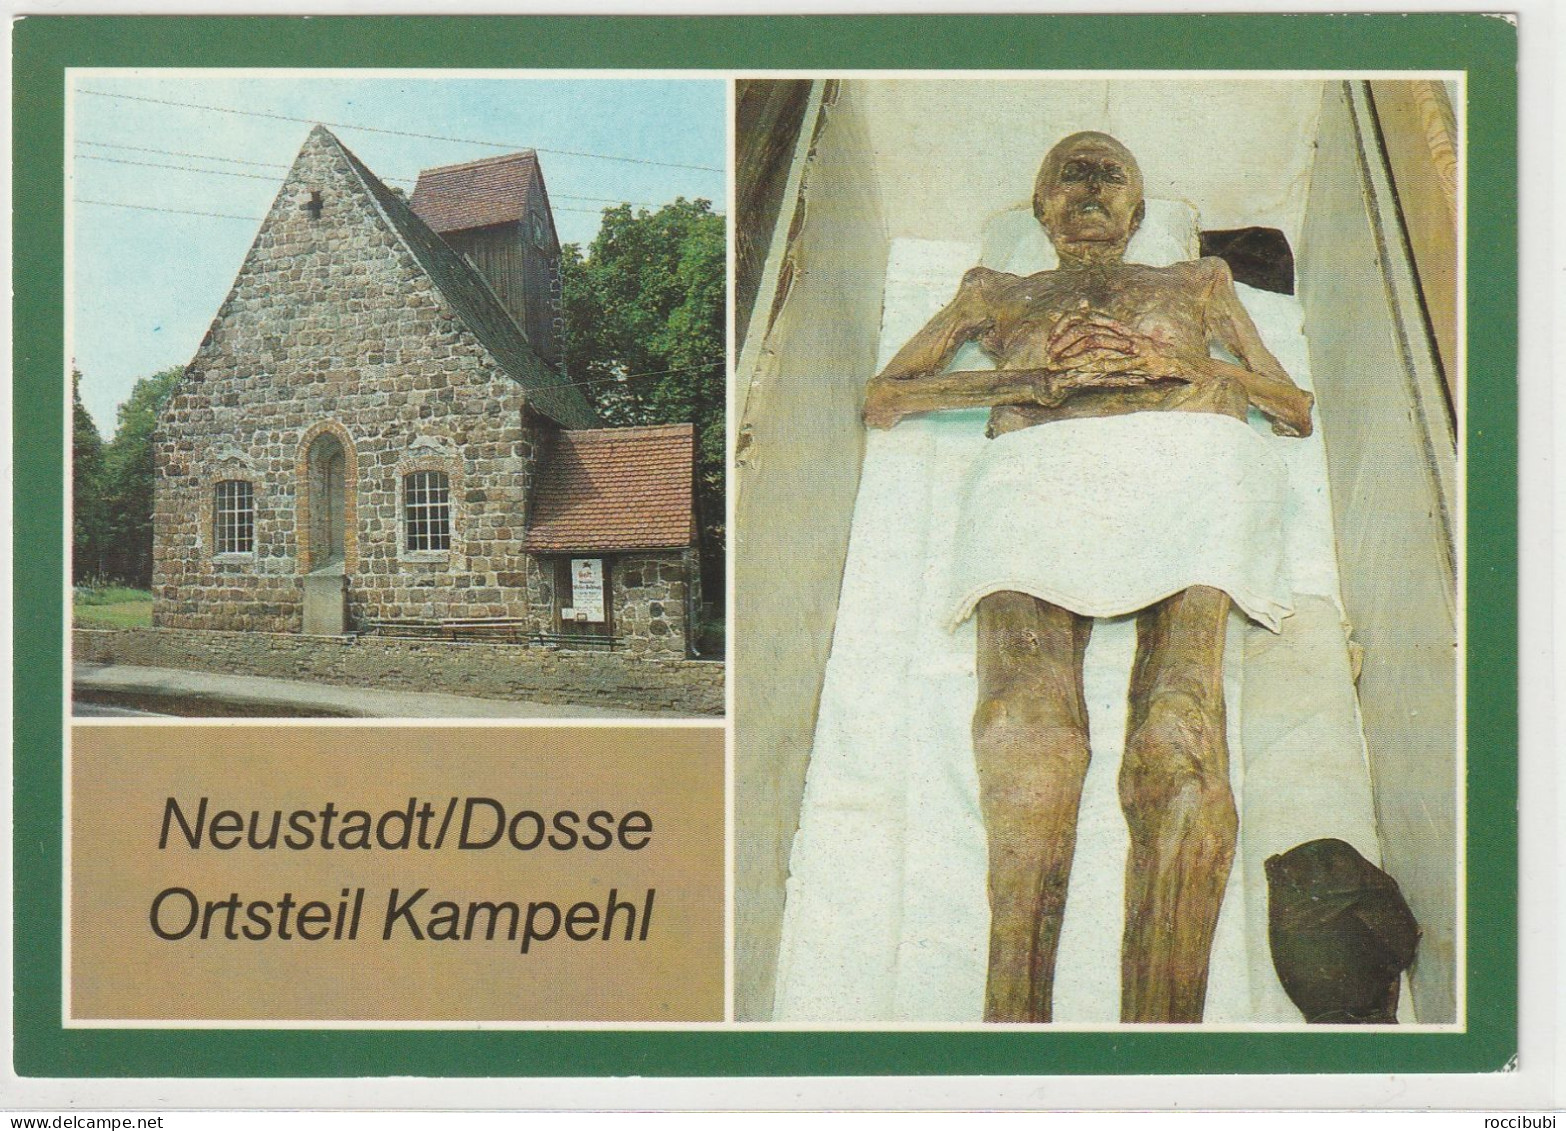 Neustadt (Dosse), OT Kampehl - Neustadt (Dosse)